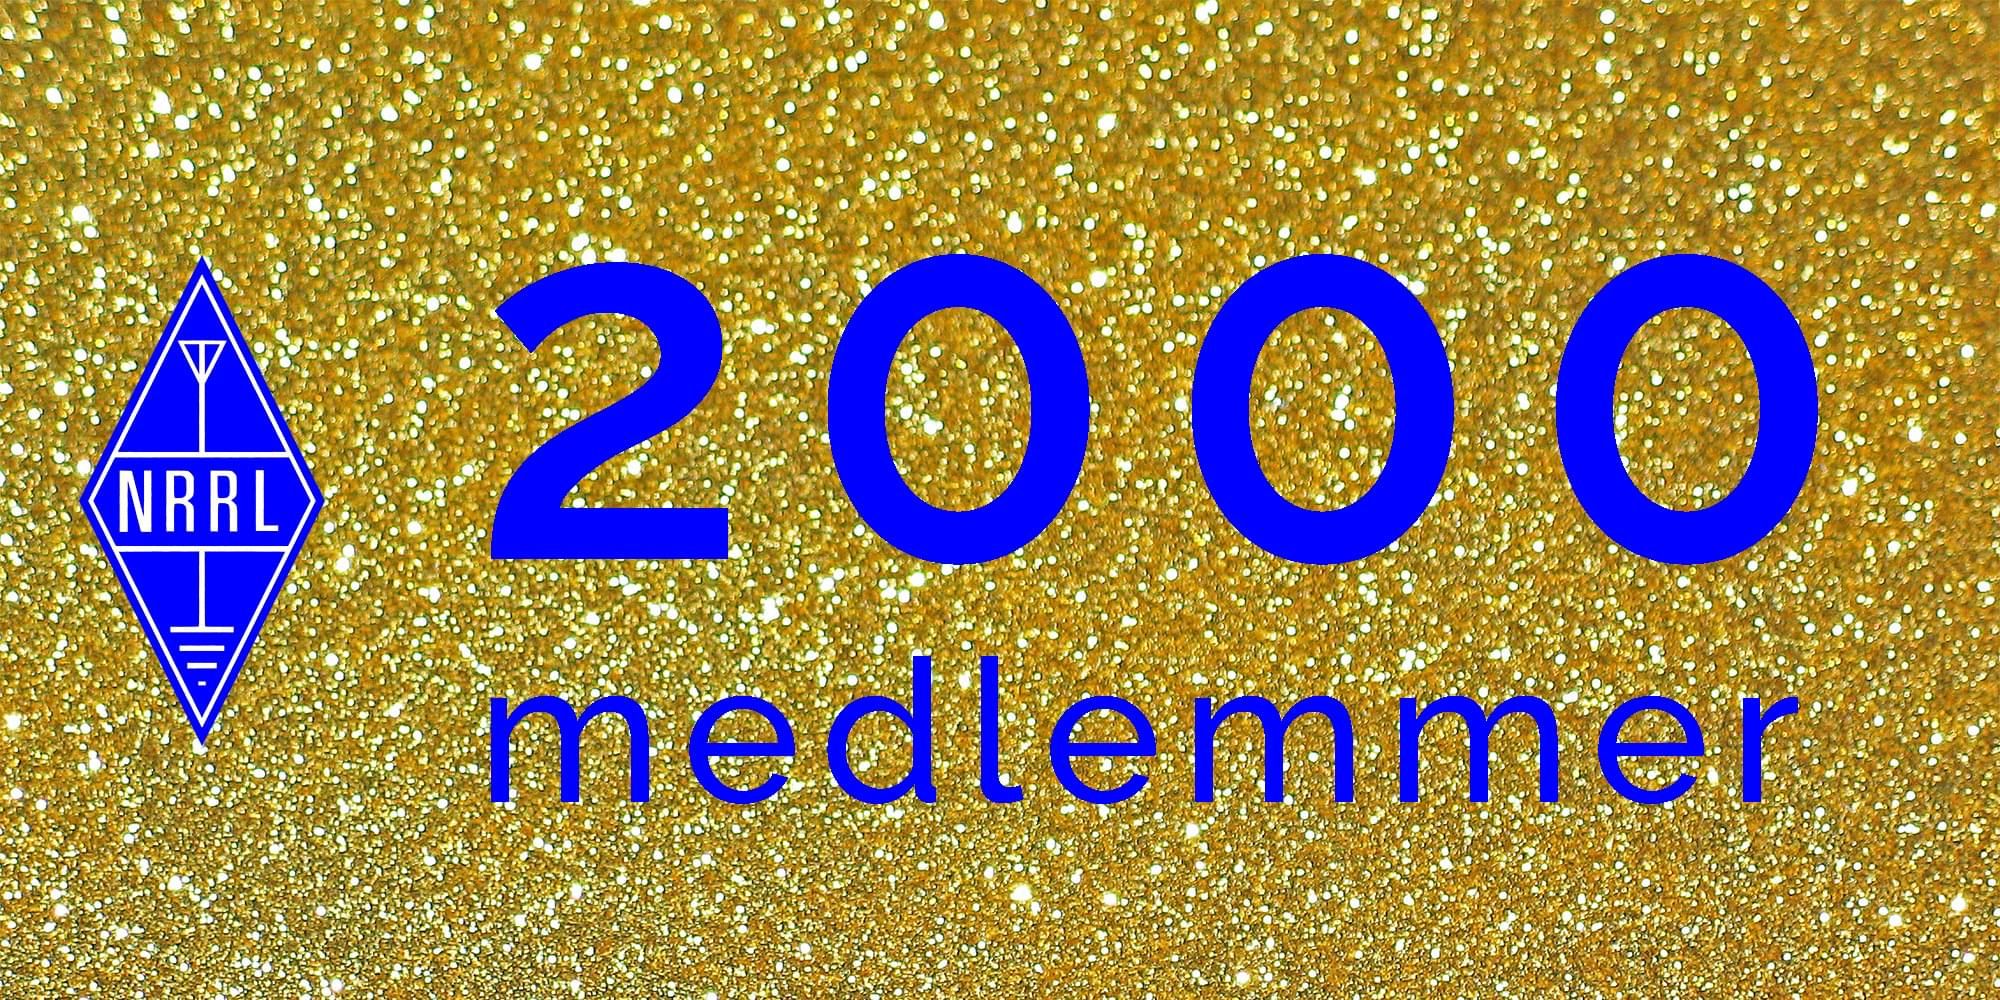 2000 medlemmer. Bilde.